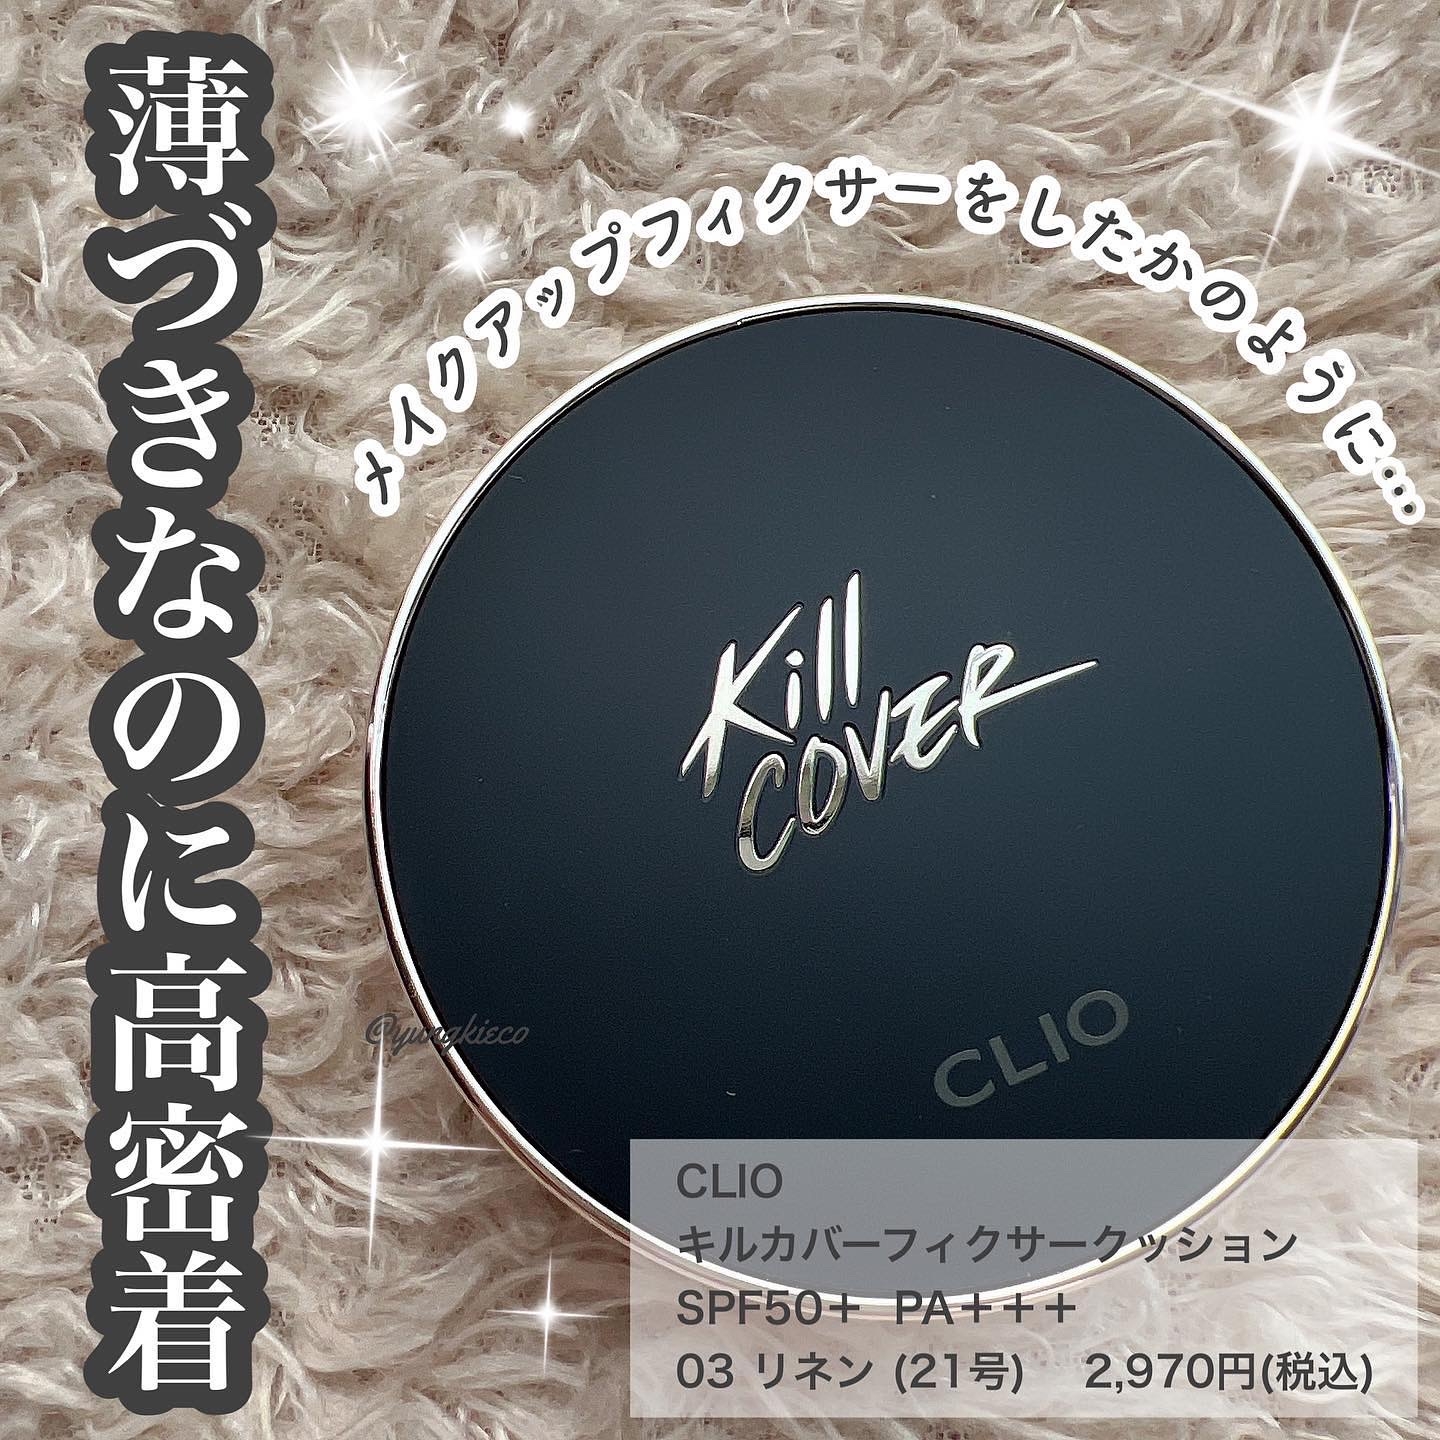 CLIO(クリオ) キル カバー フィクサー クッションの良い点・メリットに関するyungさんの口コミ画像1